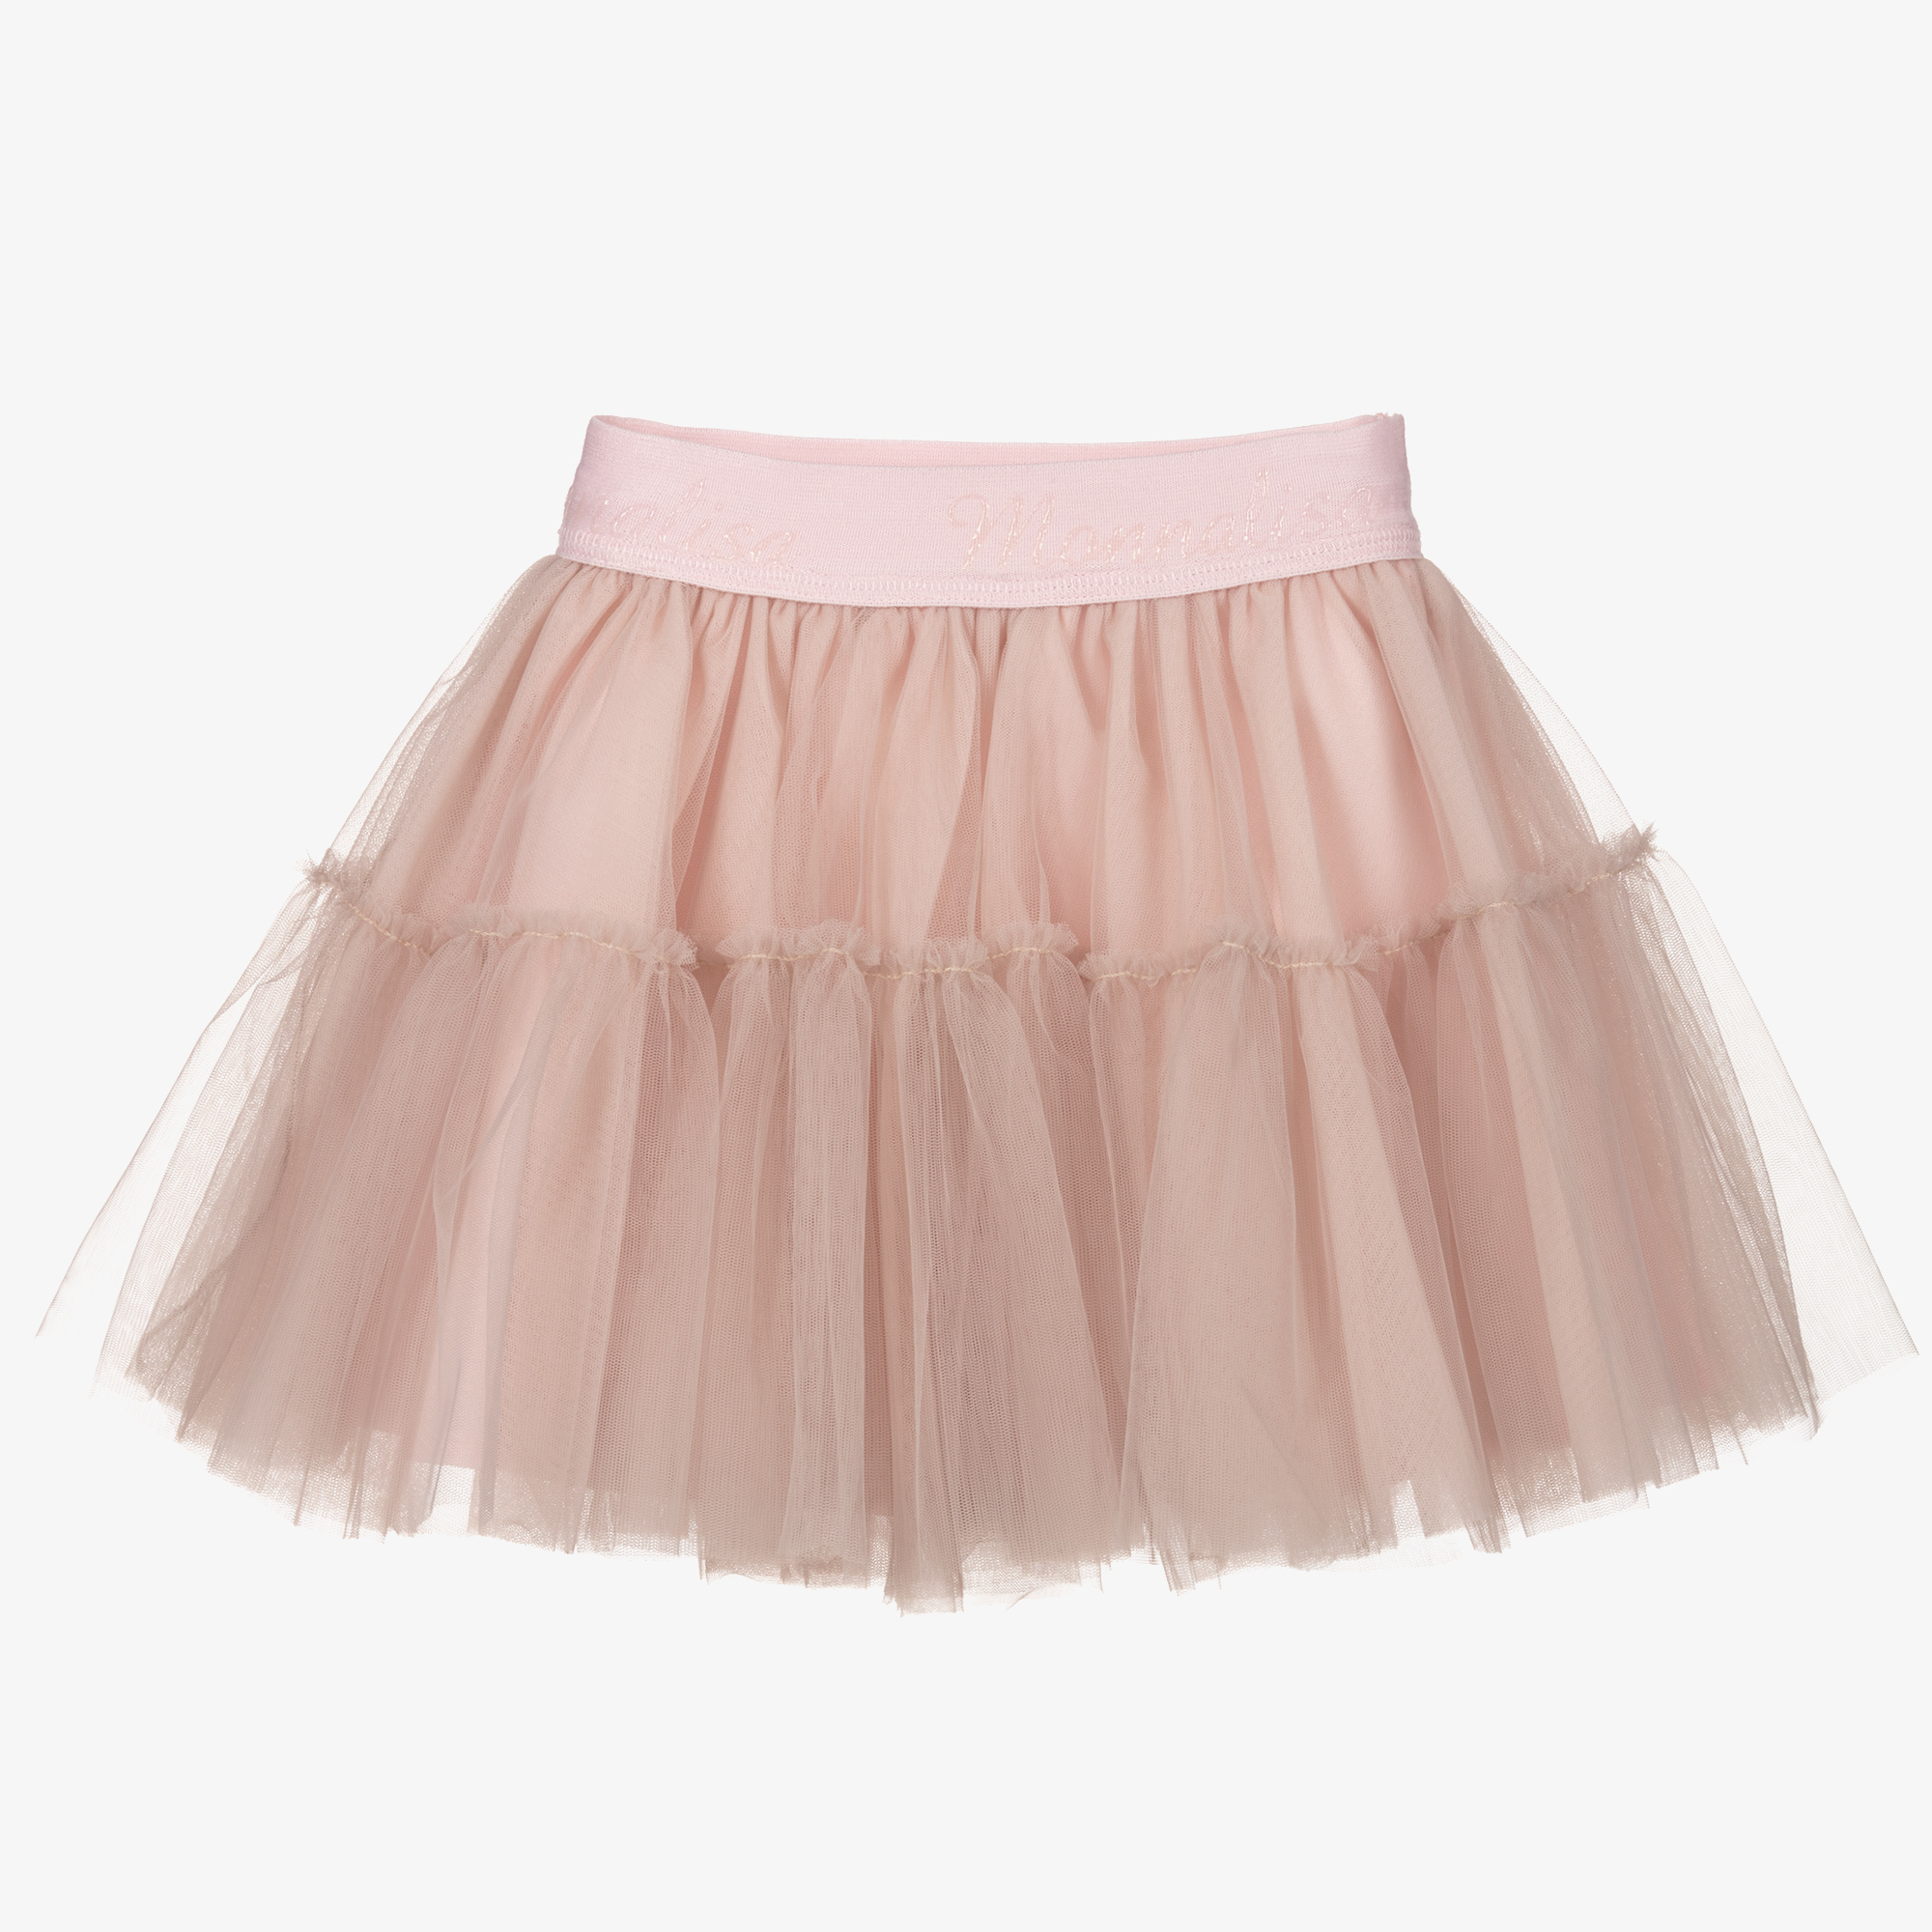 skirt heartgold